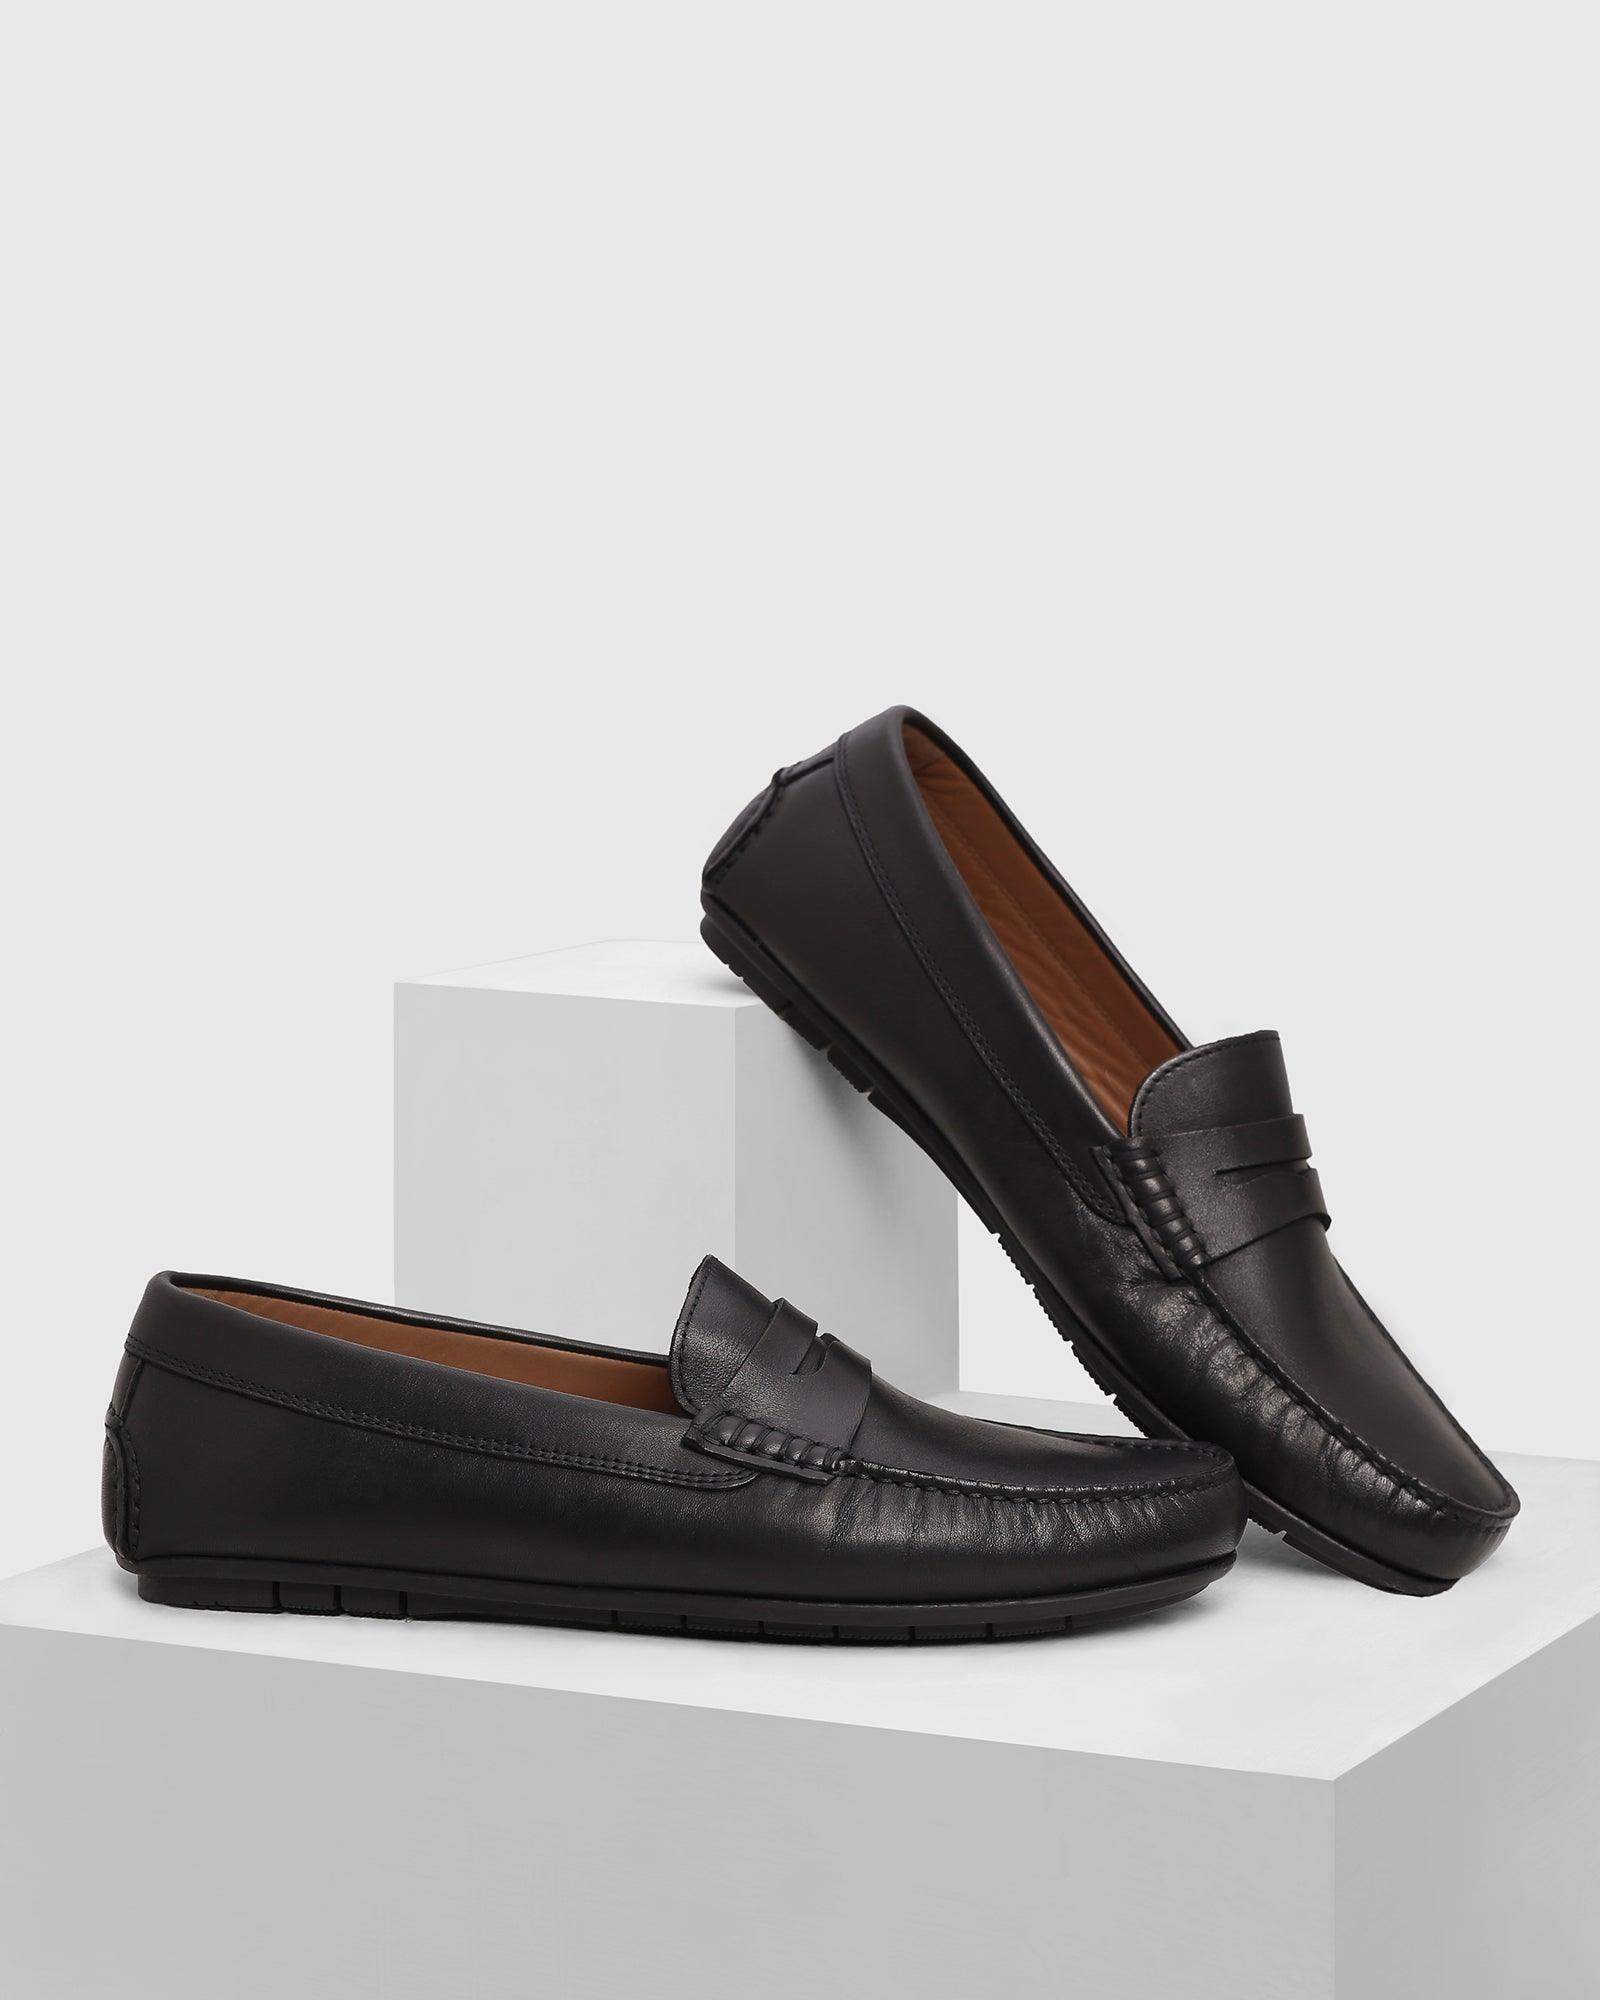 Modregning Kom forbi for at vide det Shipley Leather Casual Black Solid Loafers Shoes - Park